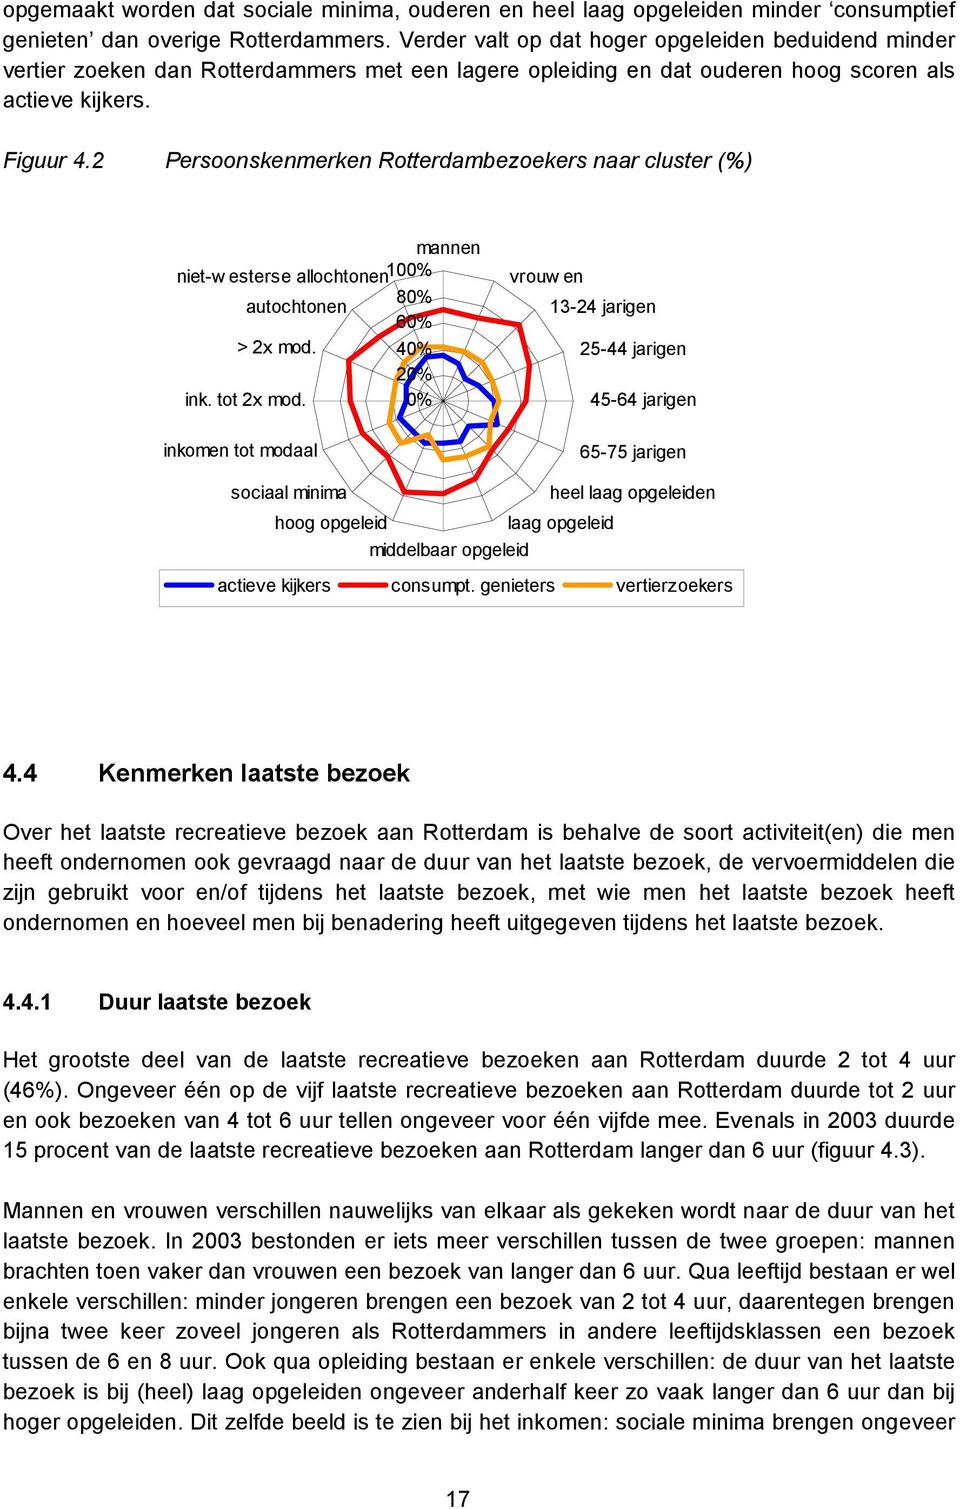 2 Persoonskenmerken Rotterdambezoekers naar cluster (%) mannen niet-westerse allochtonen100% 80% autochtonen 60% > 2x mod. 40% 20% ink. tot 2x mod.